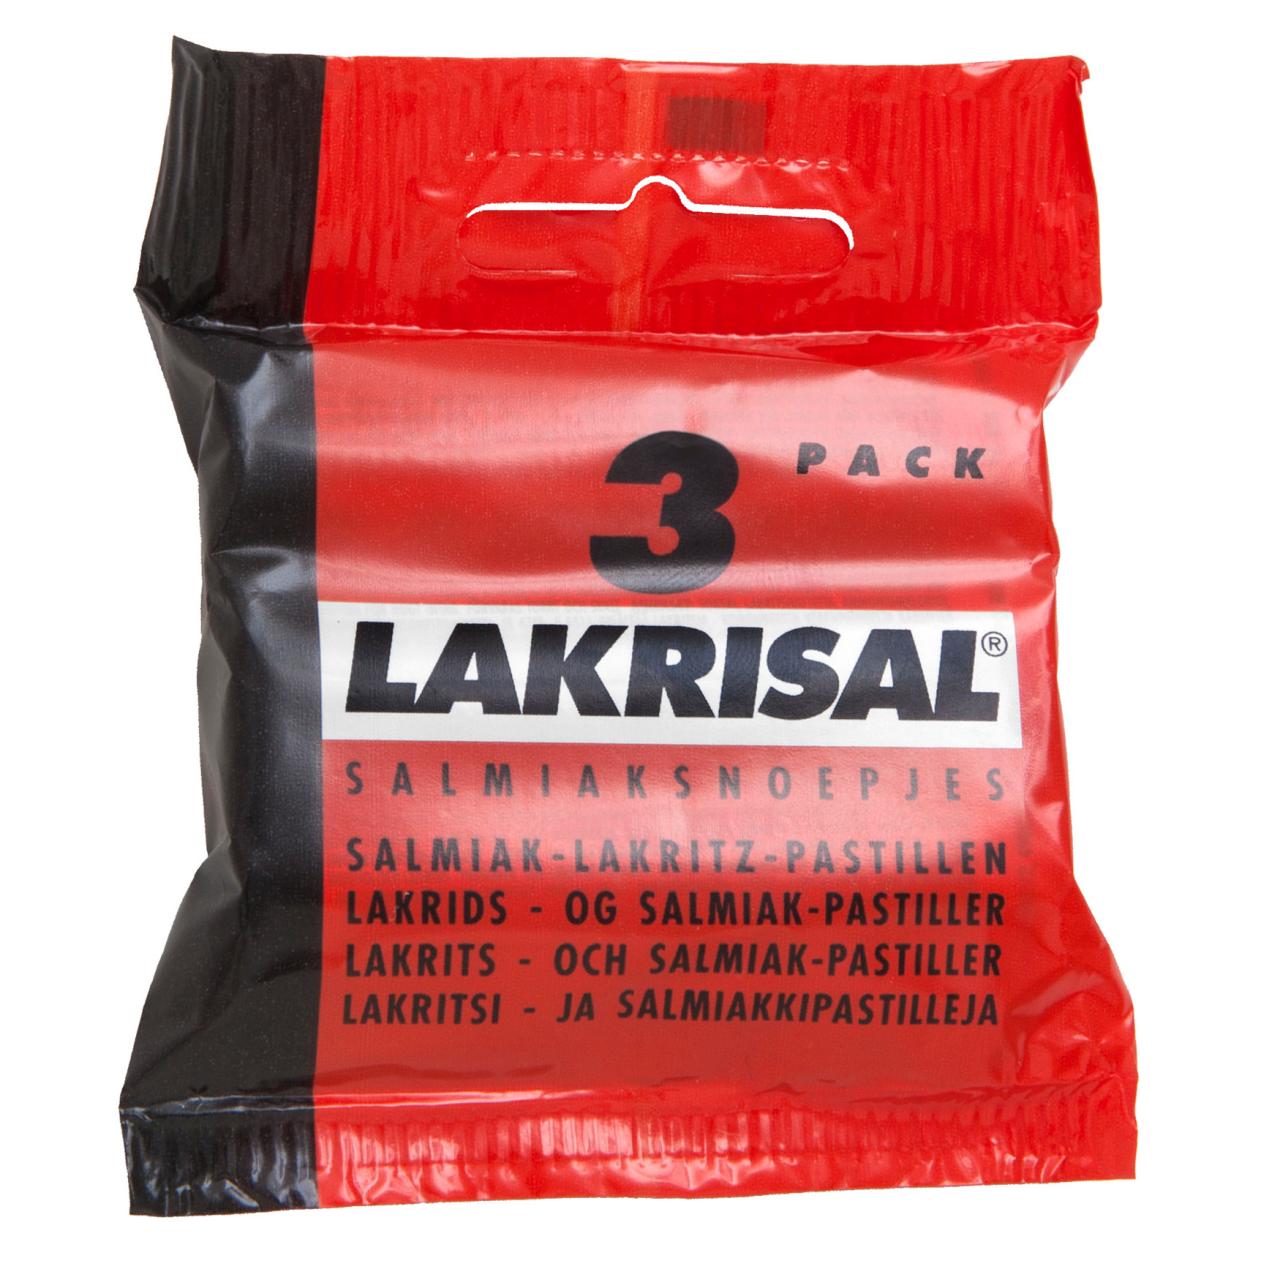 Lakrisal 3er Pack 75g